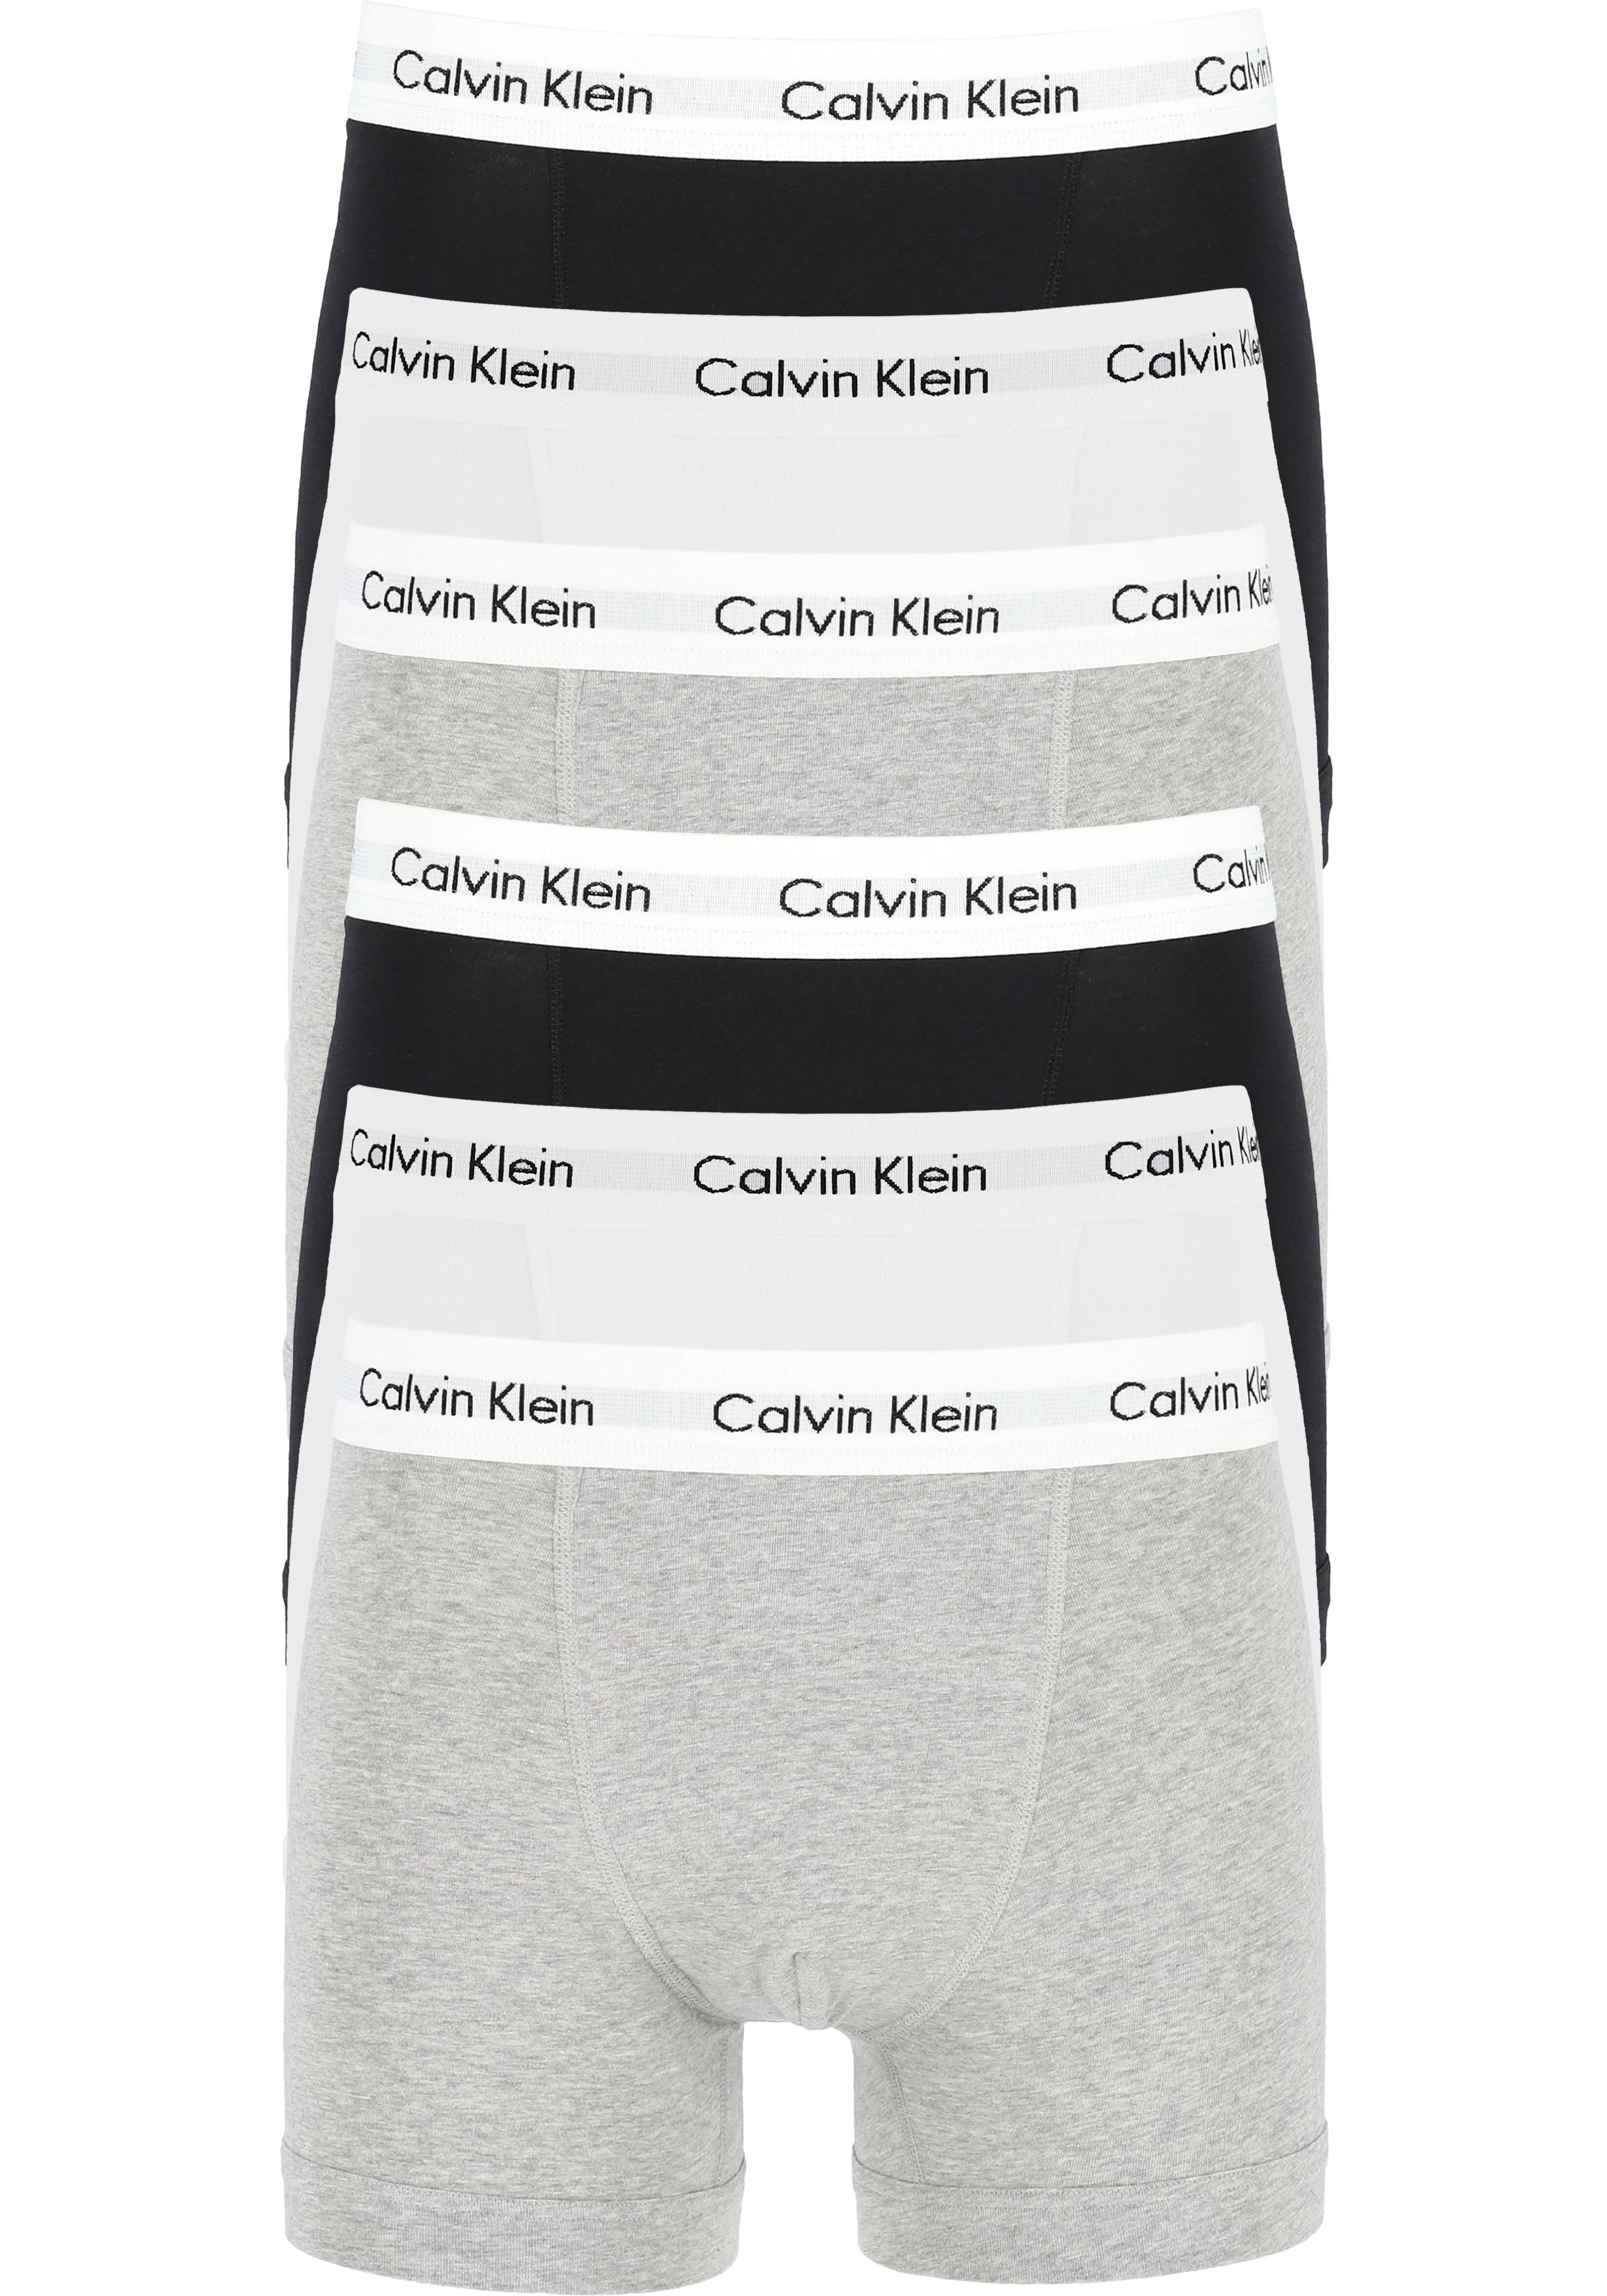 Actie 6-pack: Calvin Klein trunks, heren boxers normale lengte, zwart, grijs en wit